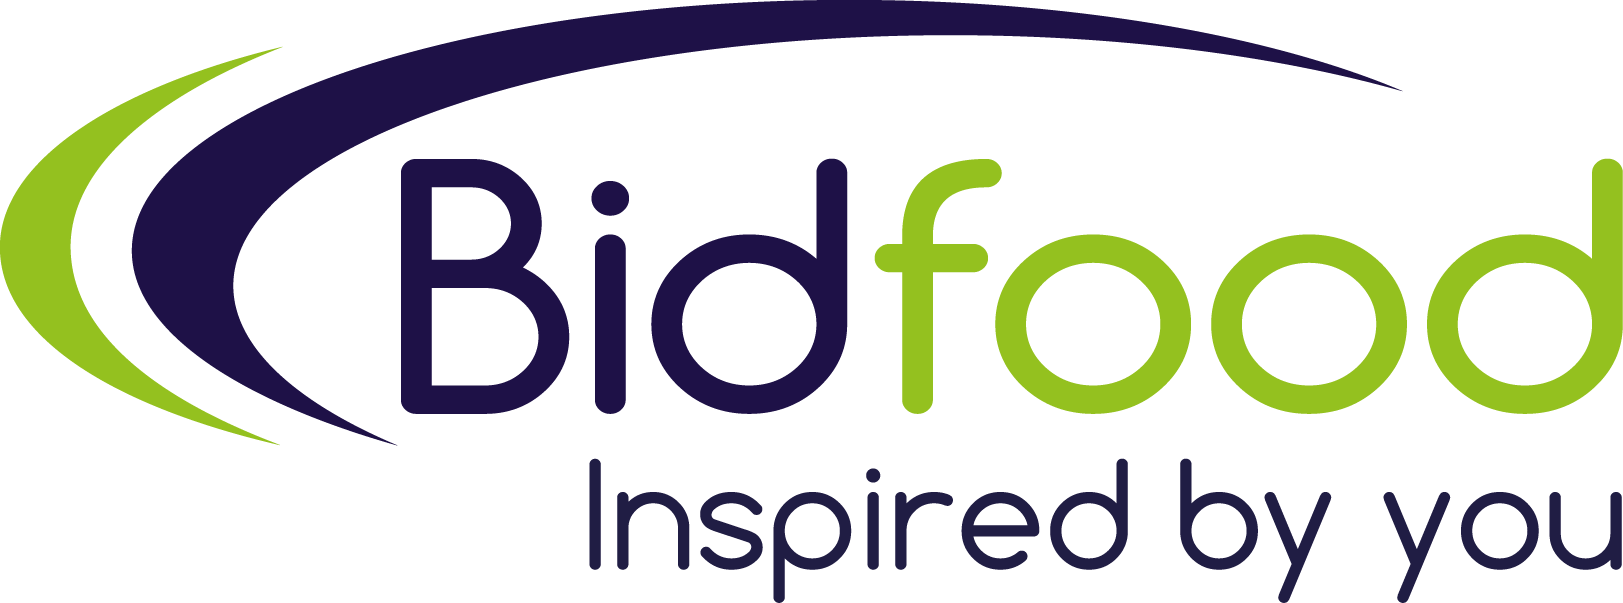 logo-bidfood